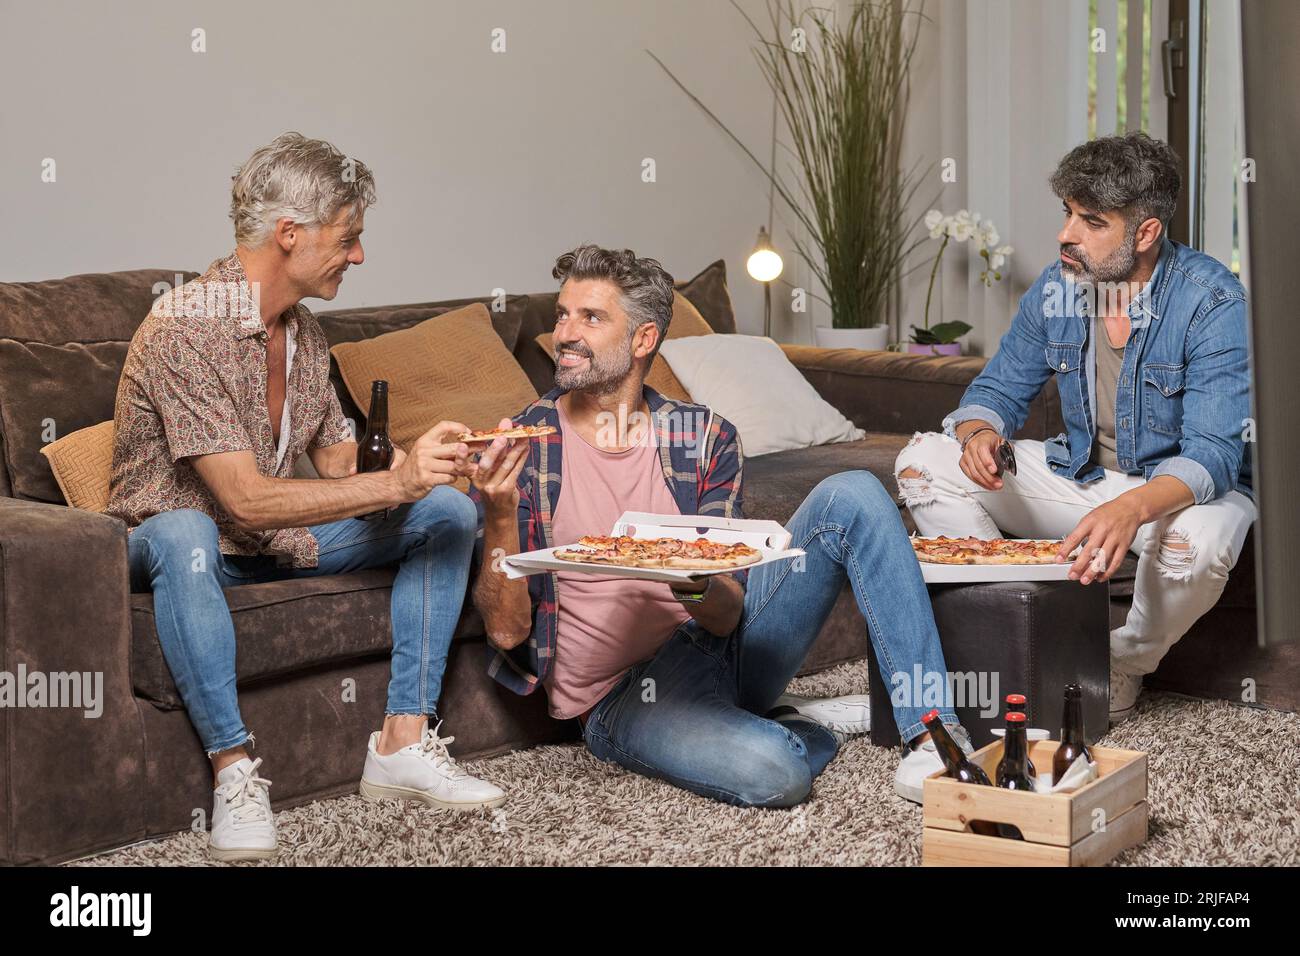 Uomini felici e maturi in abiti informali che mangiano una pizza gustosa mentre si divertono in salotto a casa Foto Stock